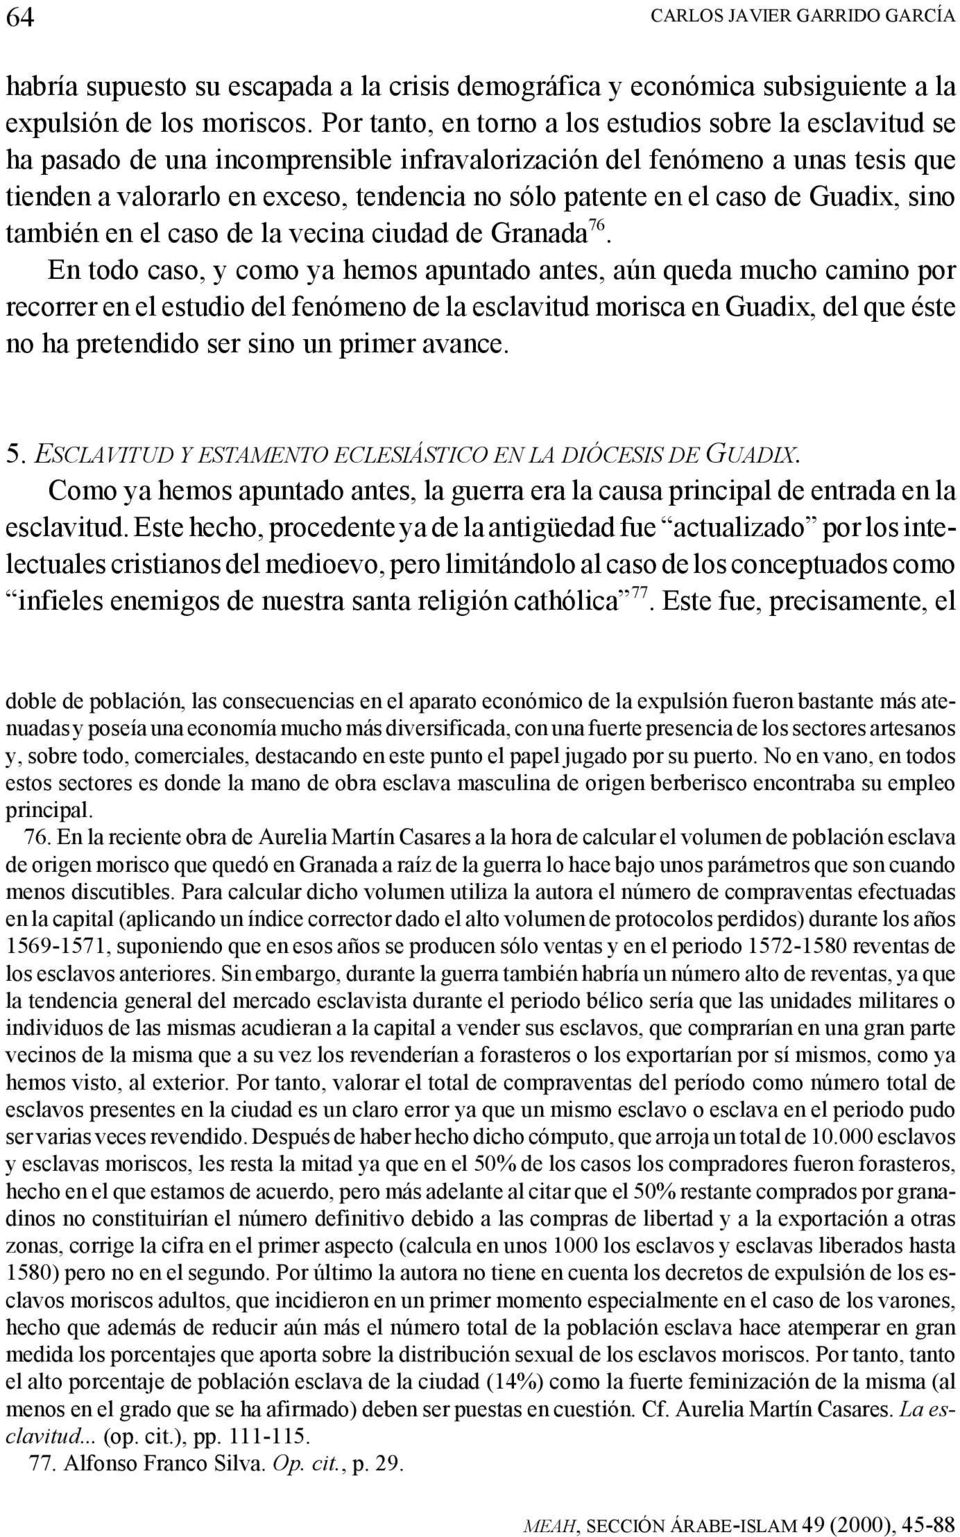 el caso de Guadix, sino también en el caso de la vecina ciudad de Granada 76.